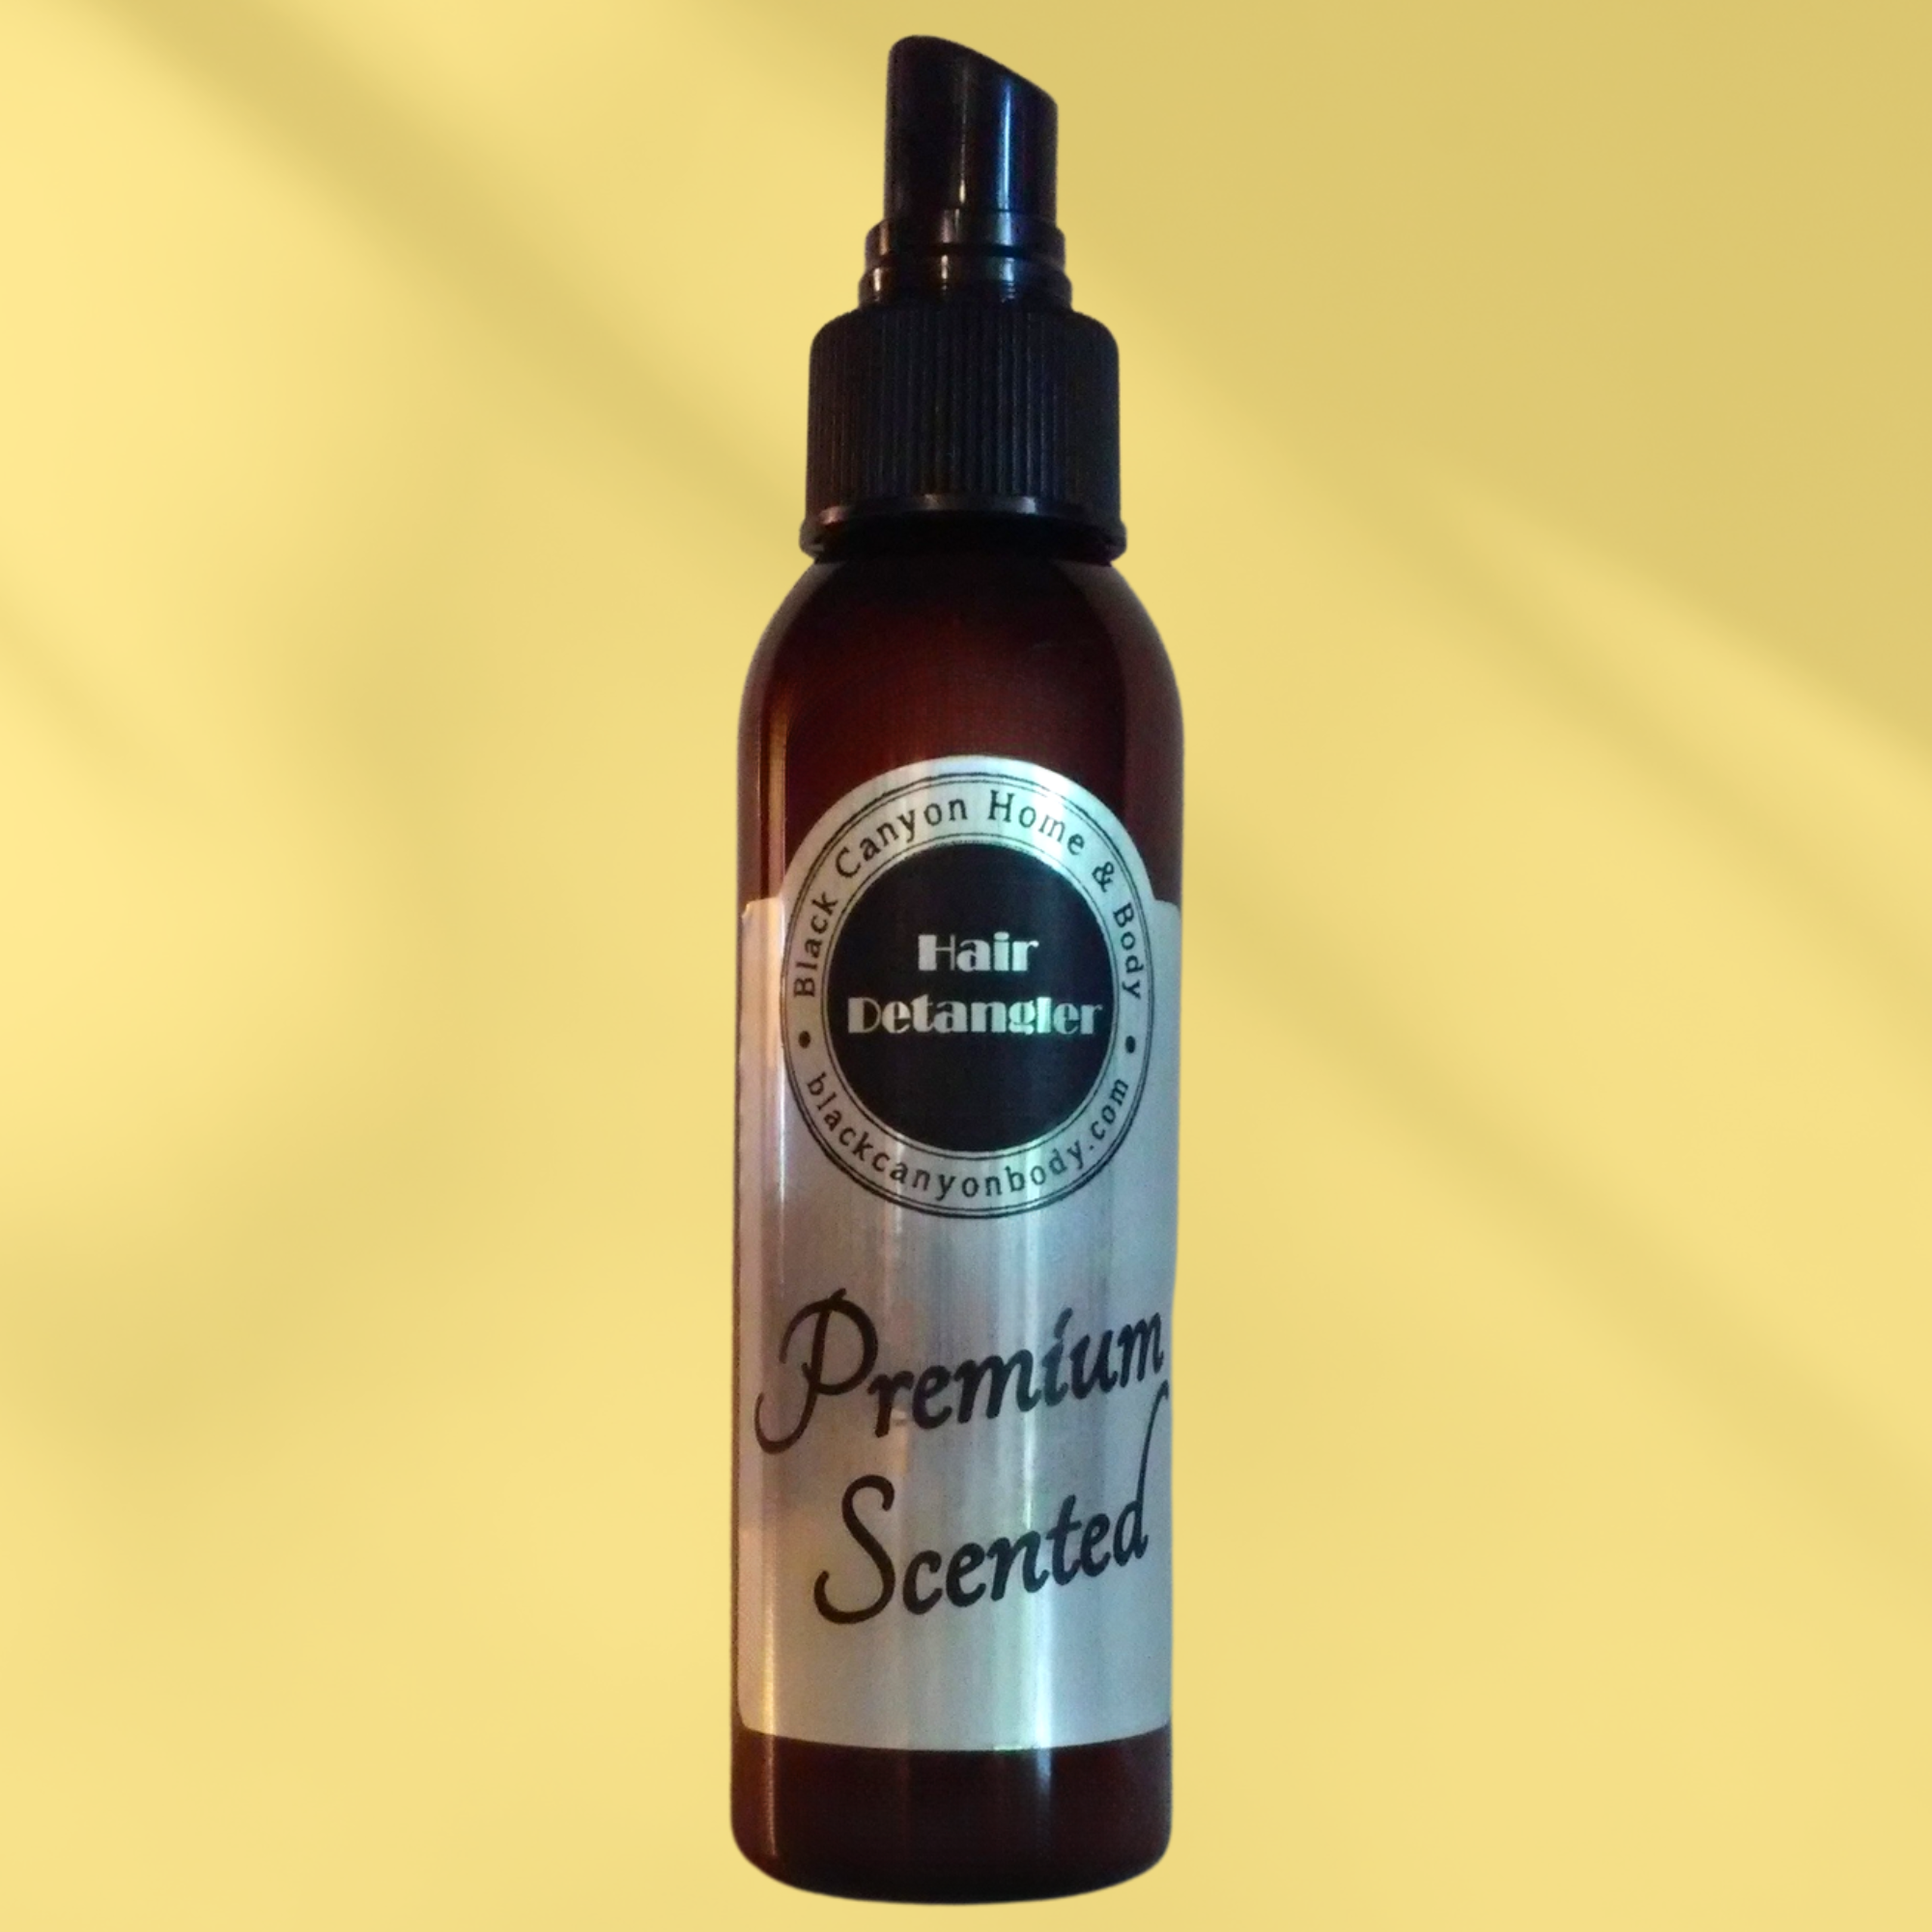 Payden's Cobalt Wood & Whiskey Scented Hair Detangler Spray For Men with Olive Oil